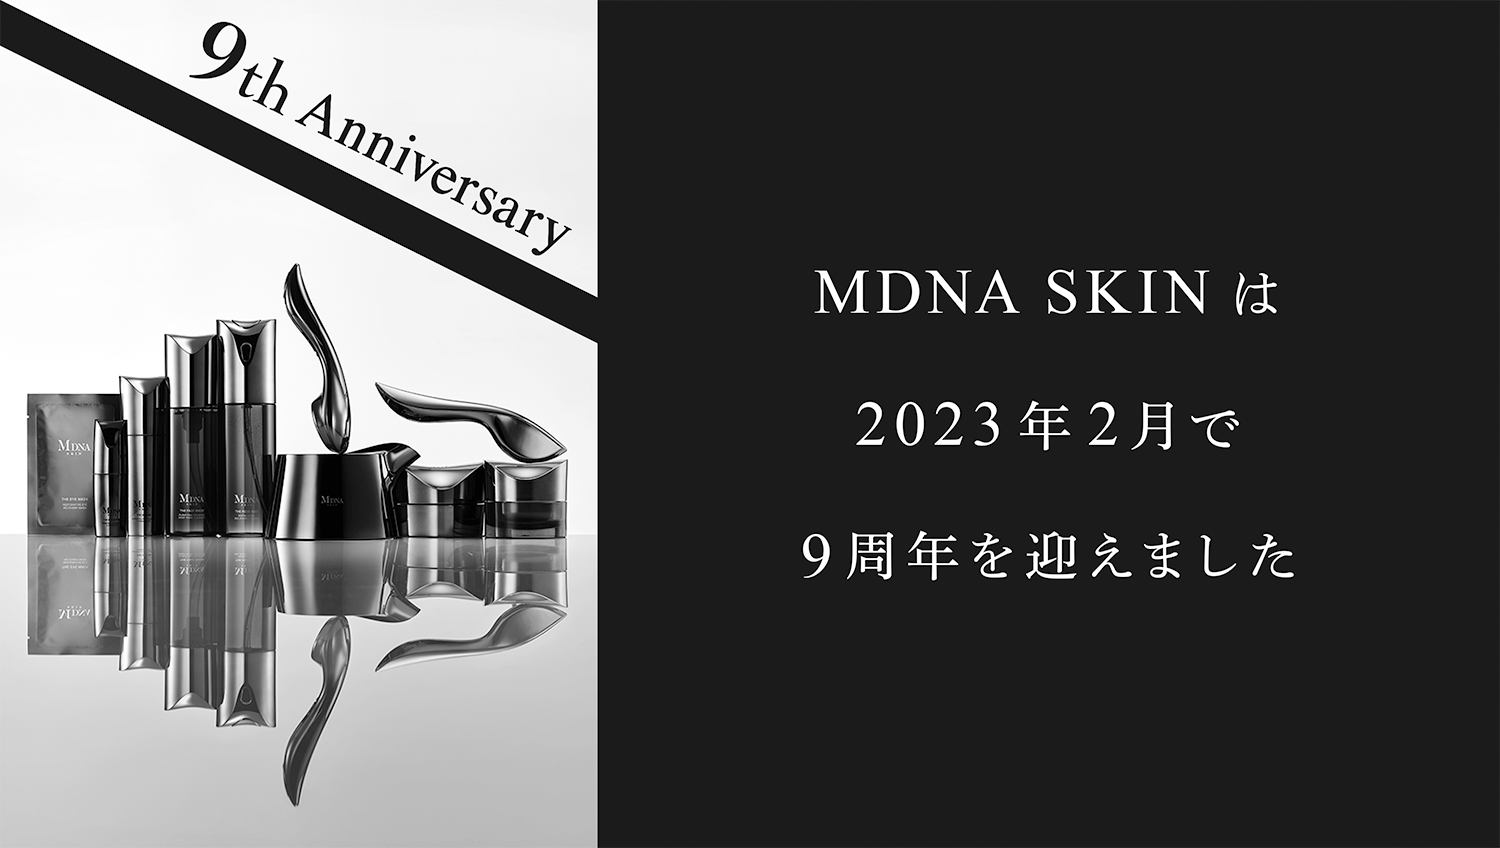 MDNA SKIN | マドンナプロデュースのスキンケアブランド